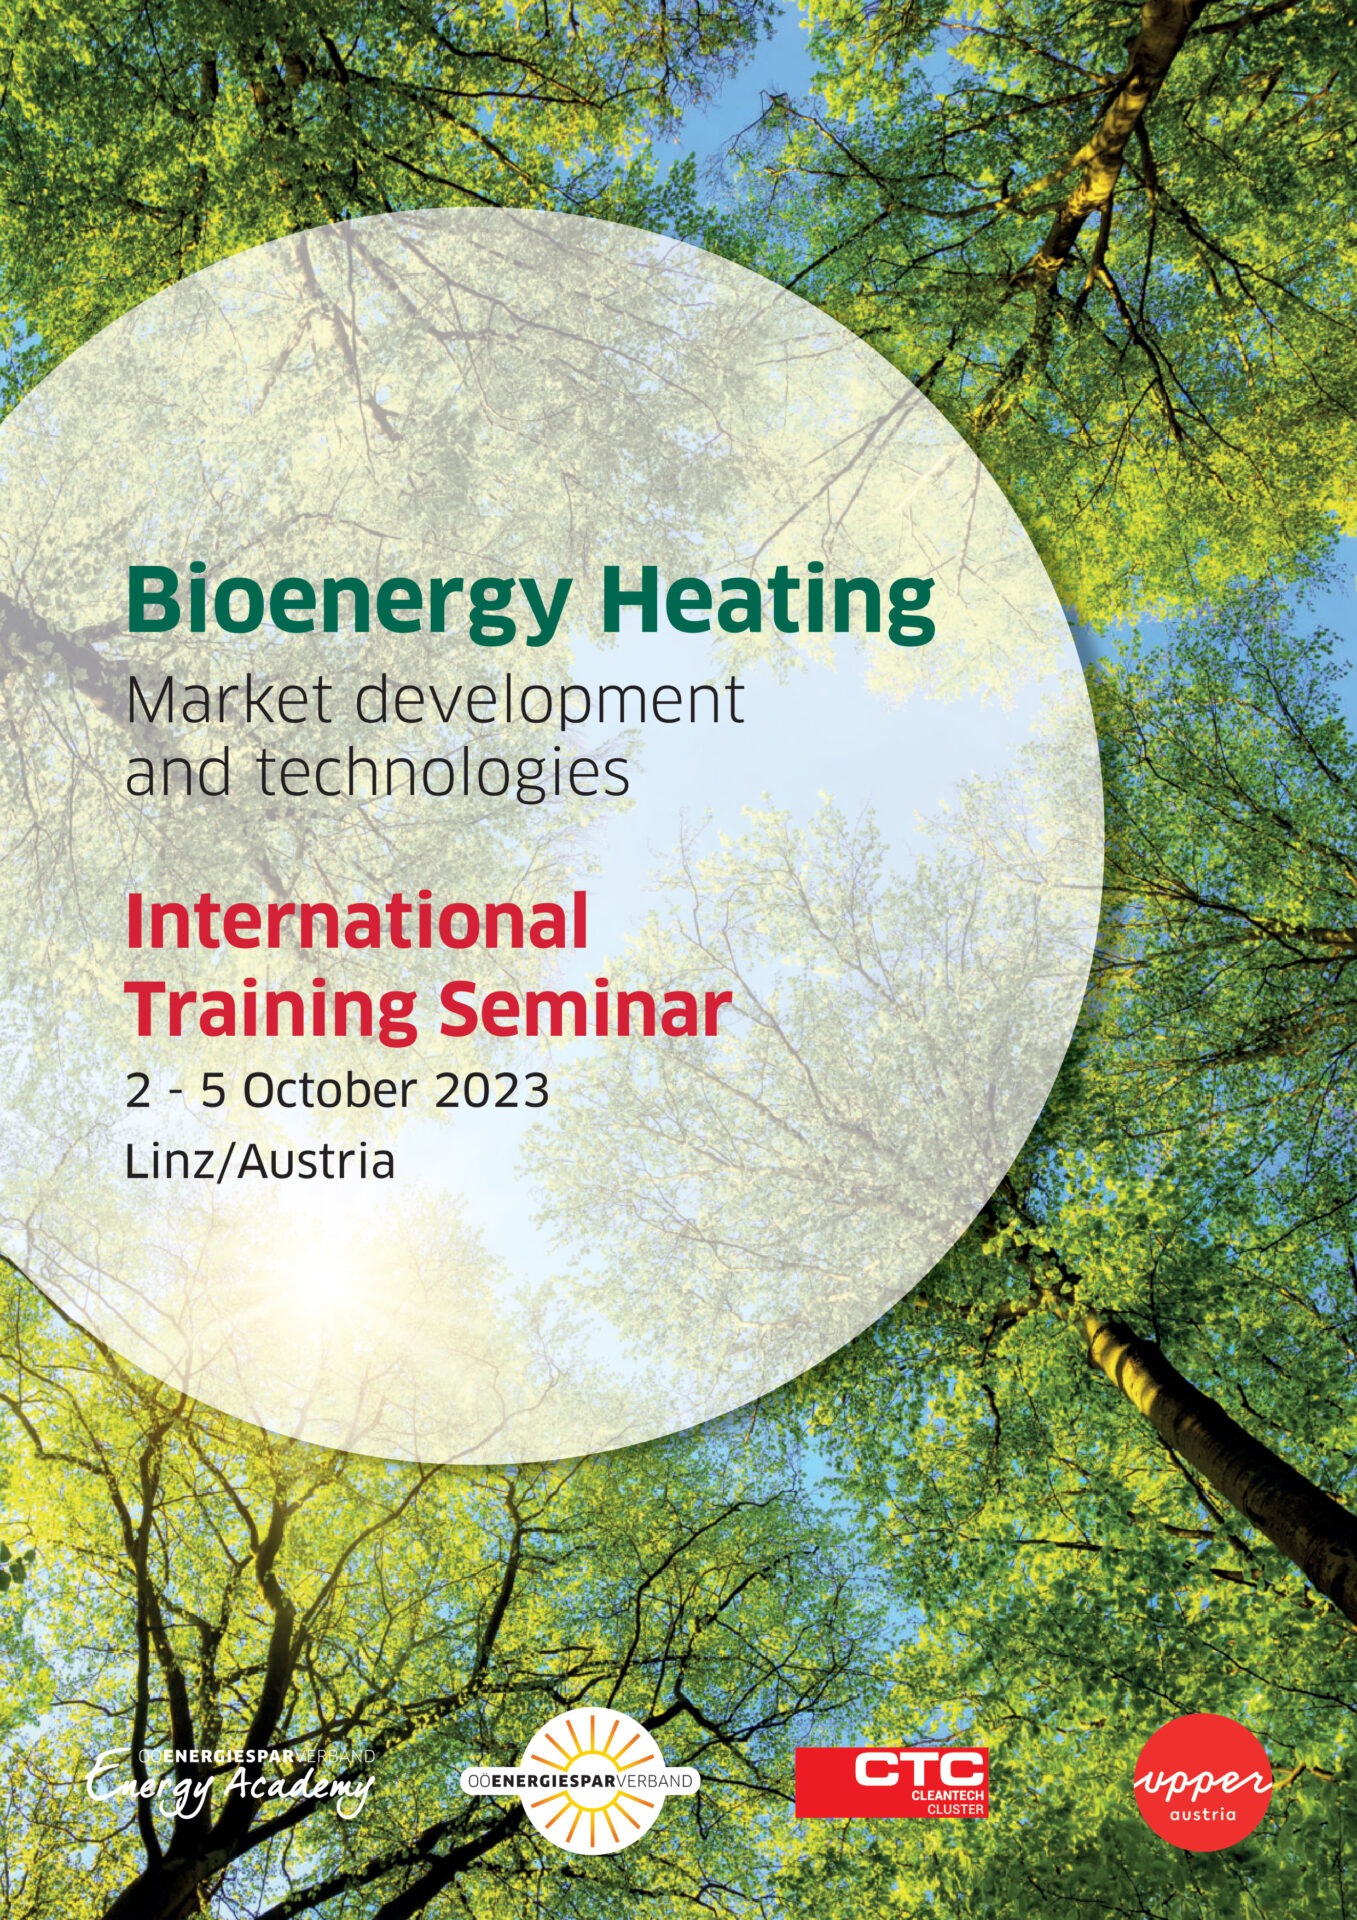 International Training Seminar: Sustainable Bioenergy Heating